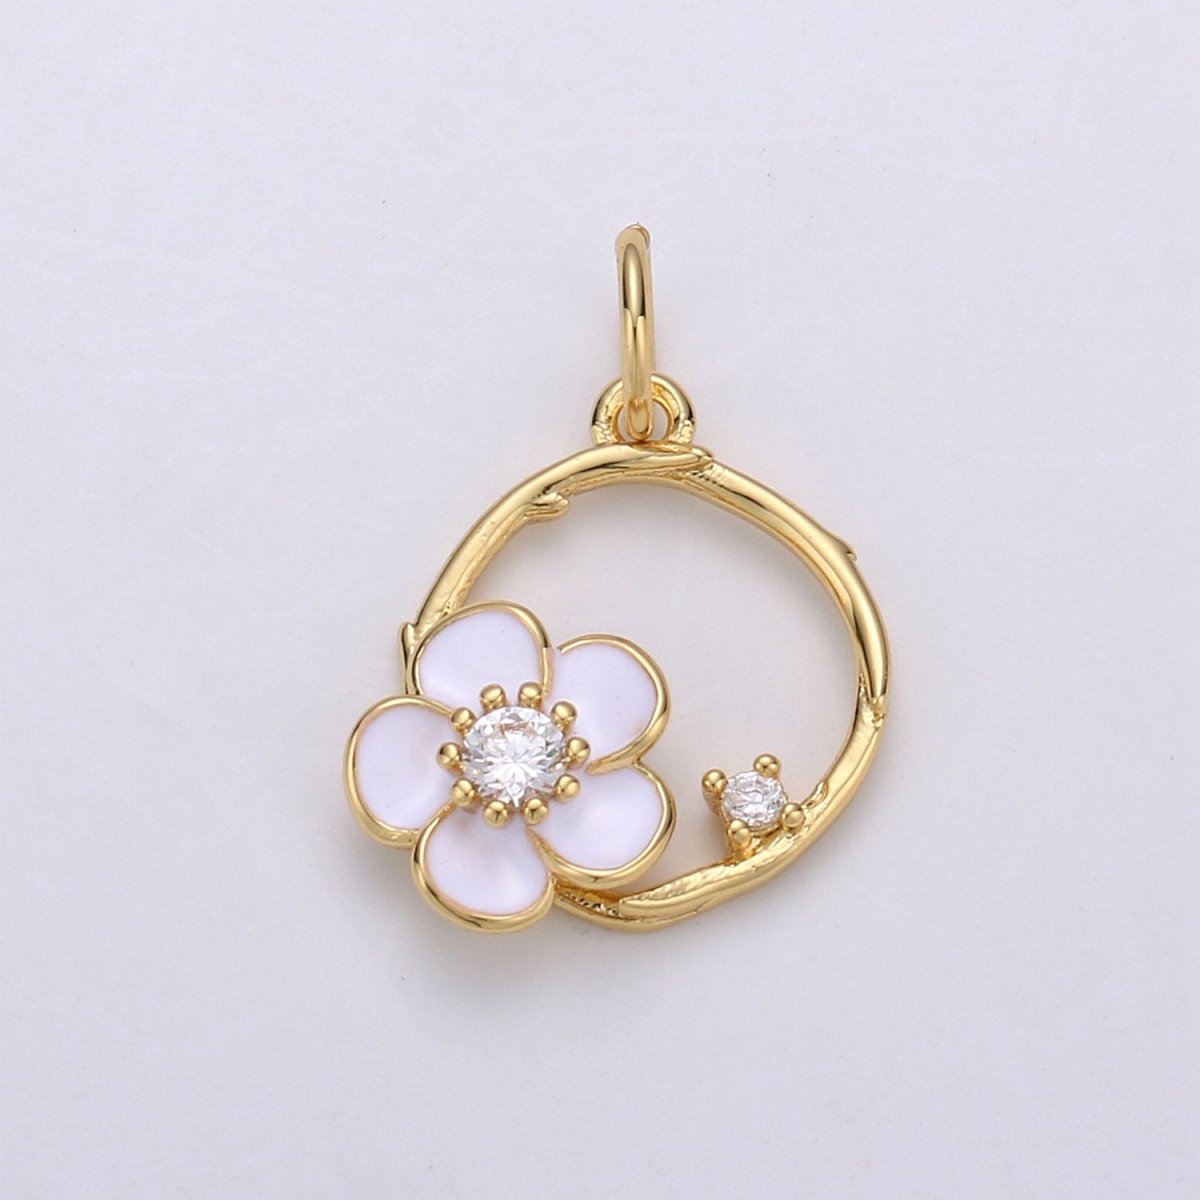 Tiny 14k Gold Filled White Flower Charm Clover Charm, CZ Gold Charm, Dainty Minimalist Jewelry Supply E-581 - DLUXCA